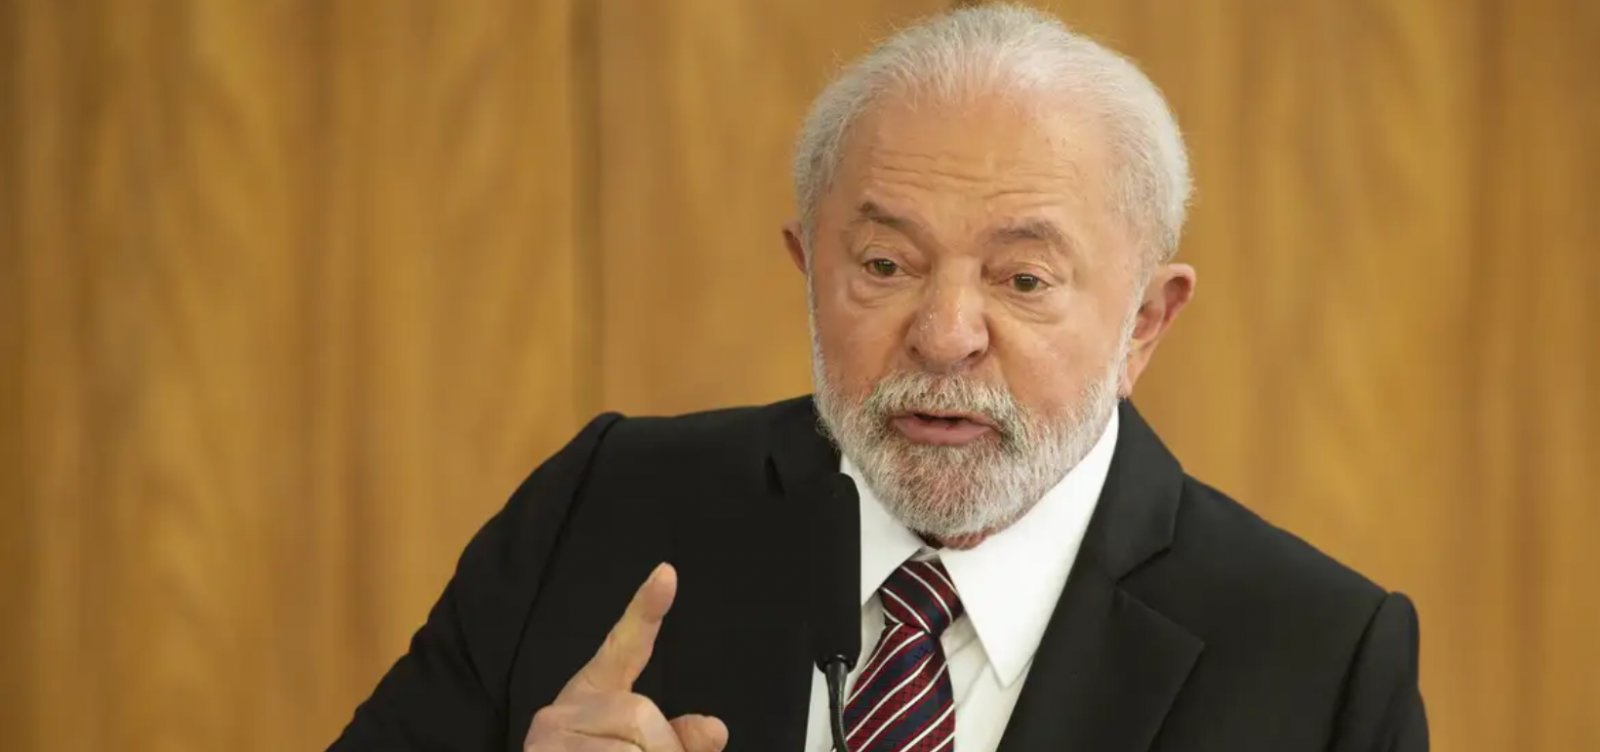 Lula critica quantidade de advogados e defende ampliar número de formados em ciências exatas